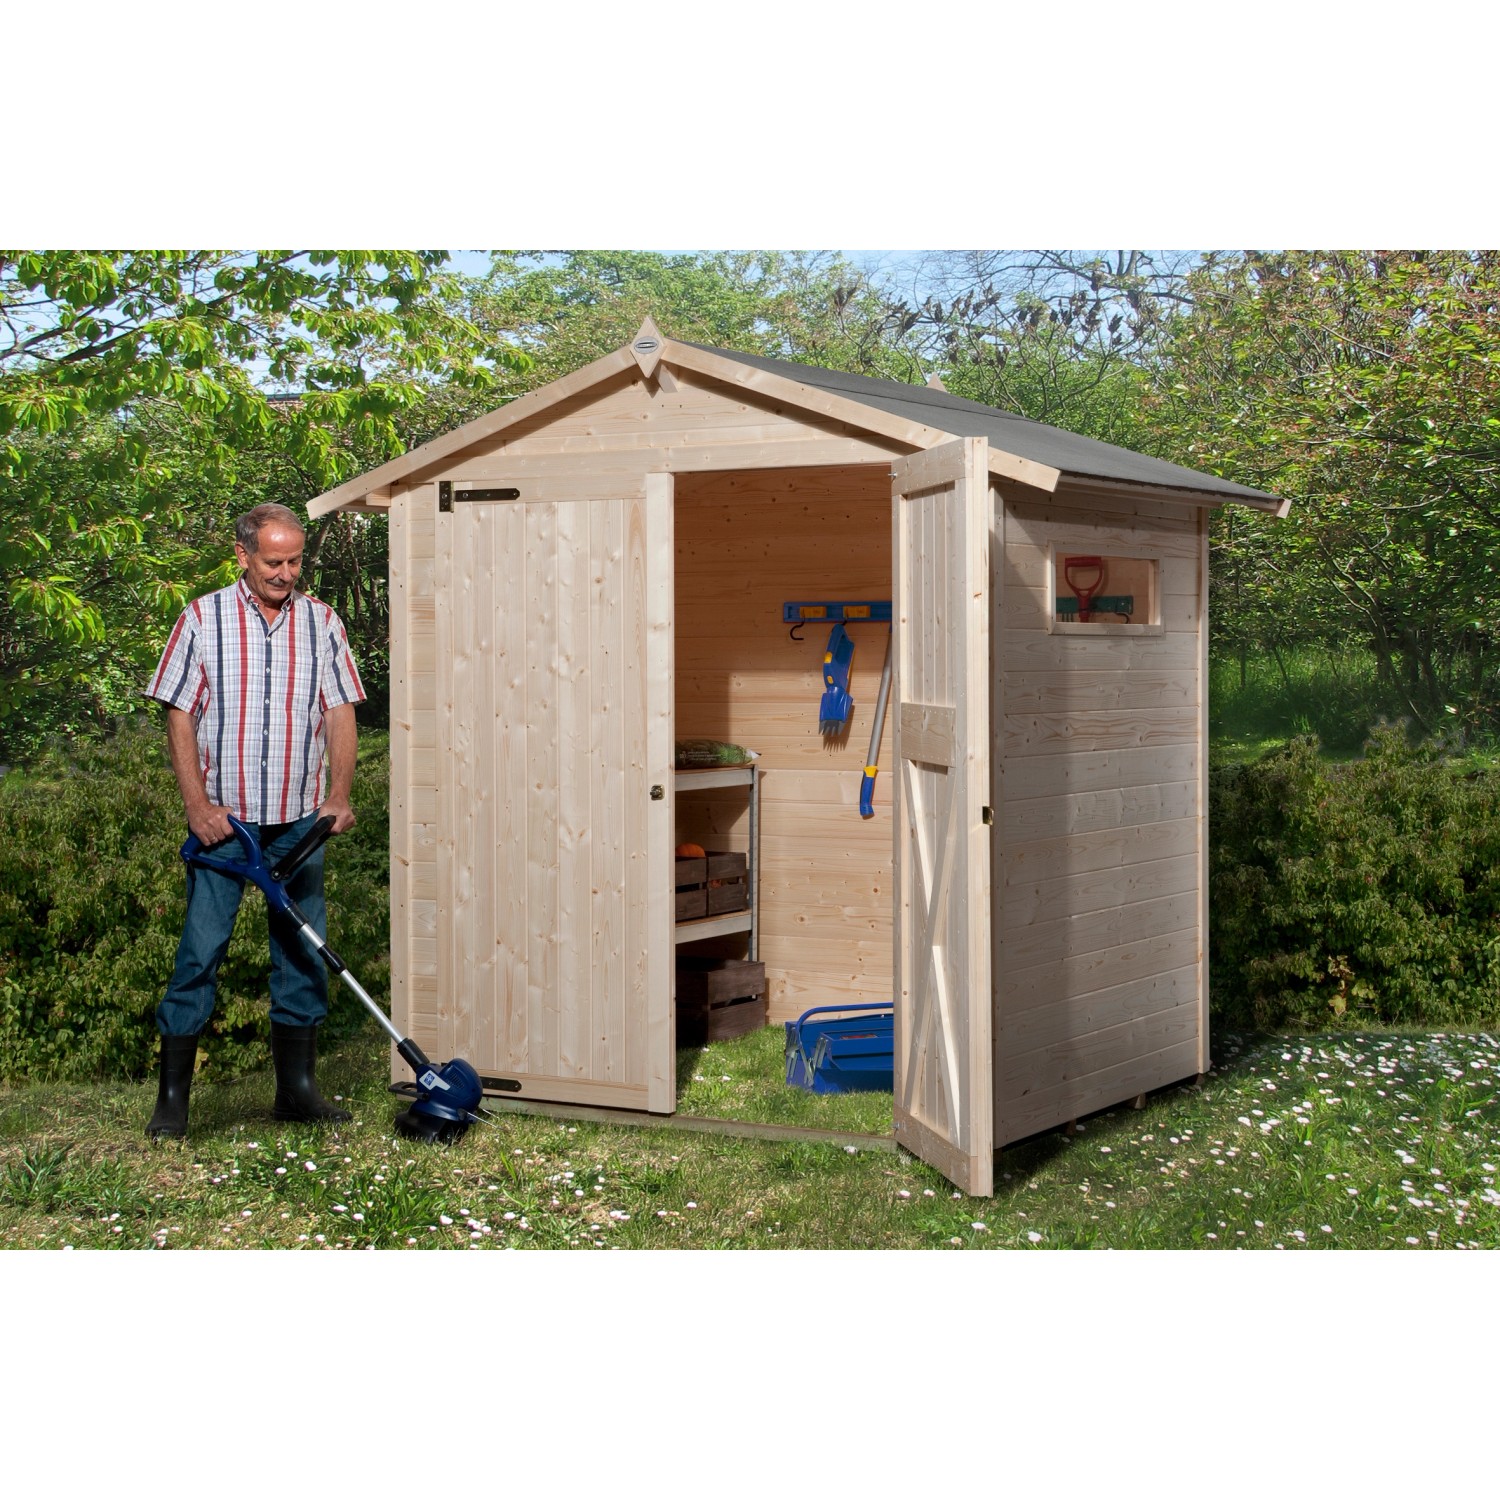 OBI Outdoor Living Holz-Gartenhaus/Gerätehaus Kompakt Satteldach 198 cm x 171 cm von OBI Outdoor Living